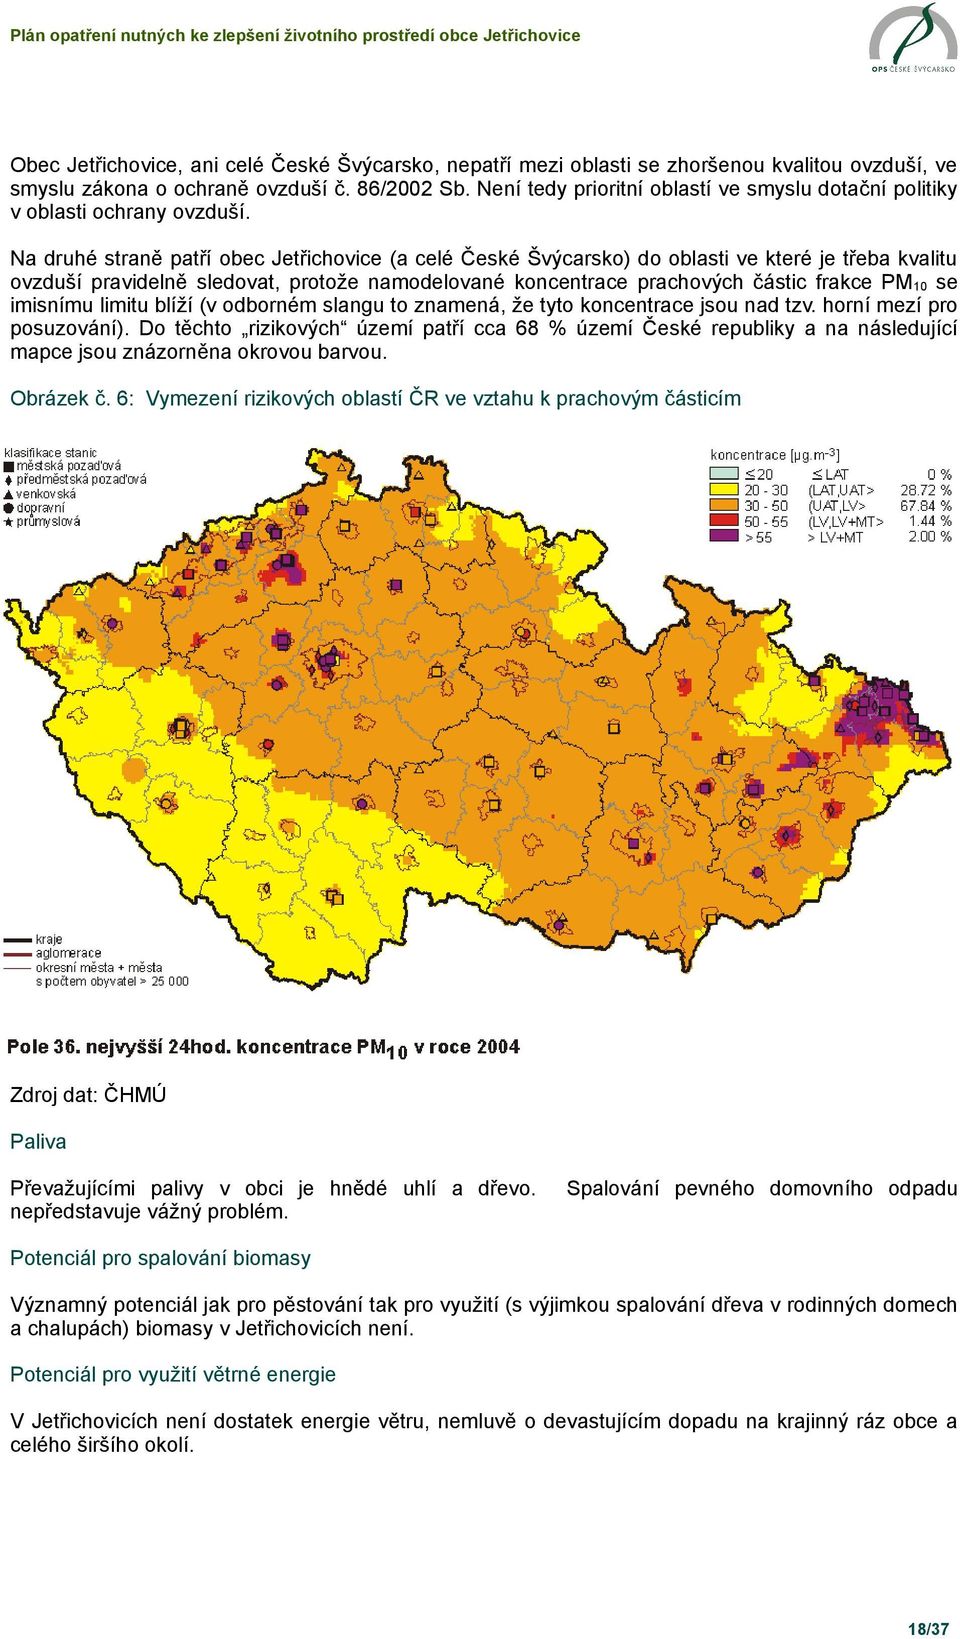 Na druhé straně patří obec Jetřichovice (a celé České Švýcarsko) do oblasti ve které je třeba kvalitu ovzduší pravidelně sledovat, protože namodelované koncentrace prachových částic frakce PM10 se